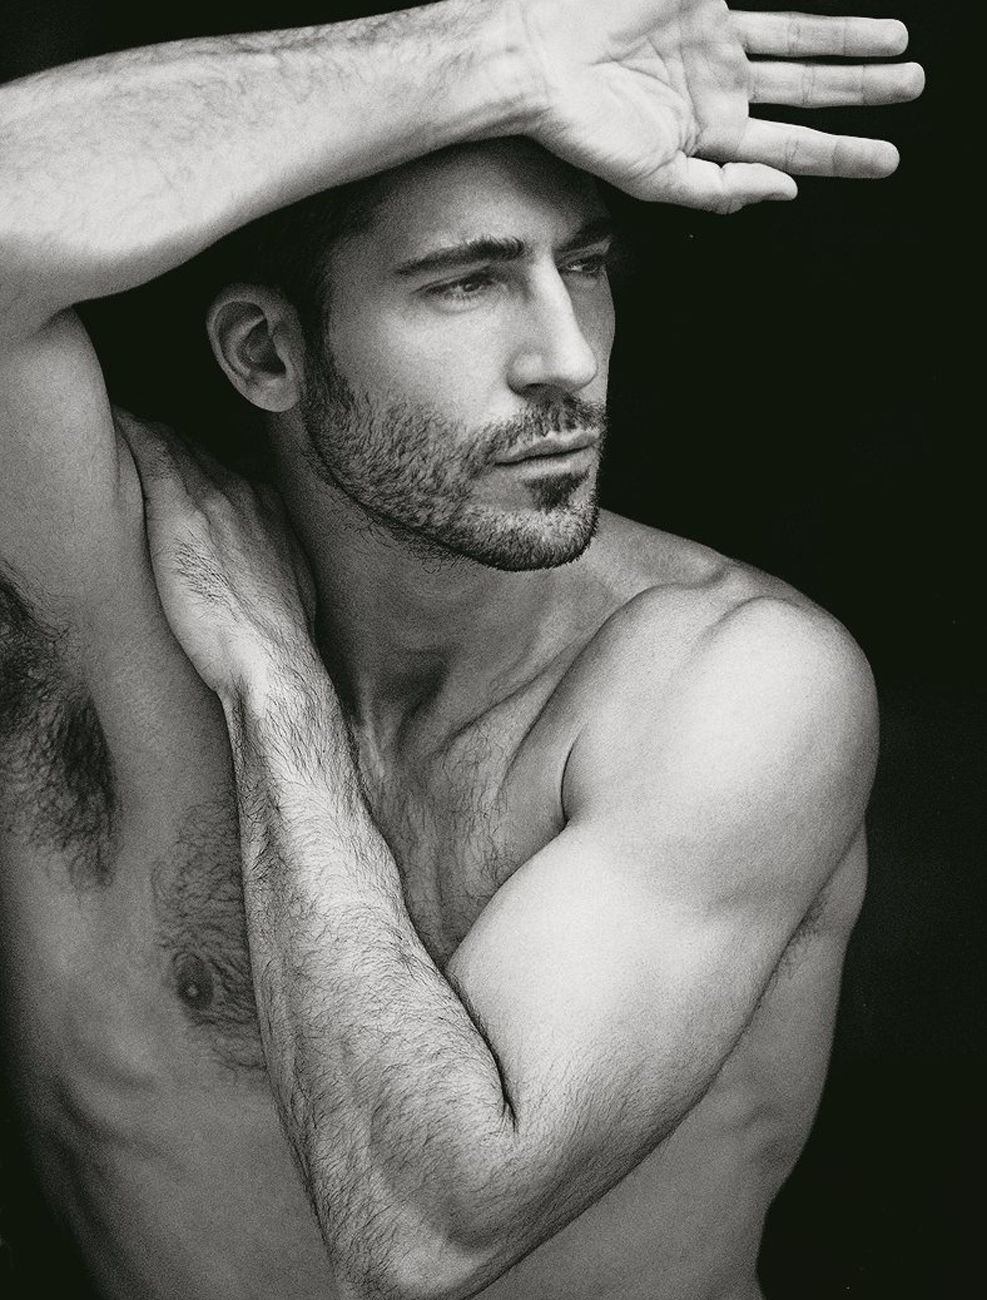 El actor suele ser modelo de grandes portadas para revistas de moda 
(Foto: Instagram/@miguelangelsilvestre)